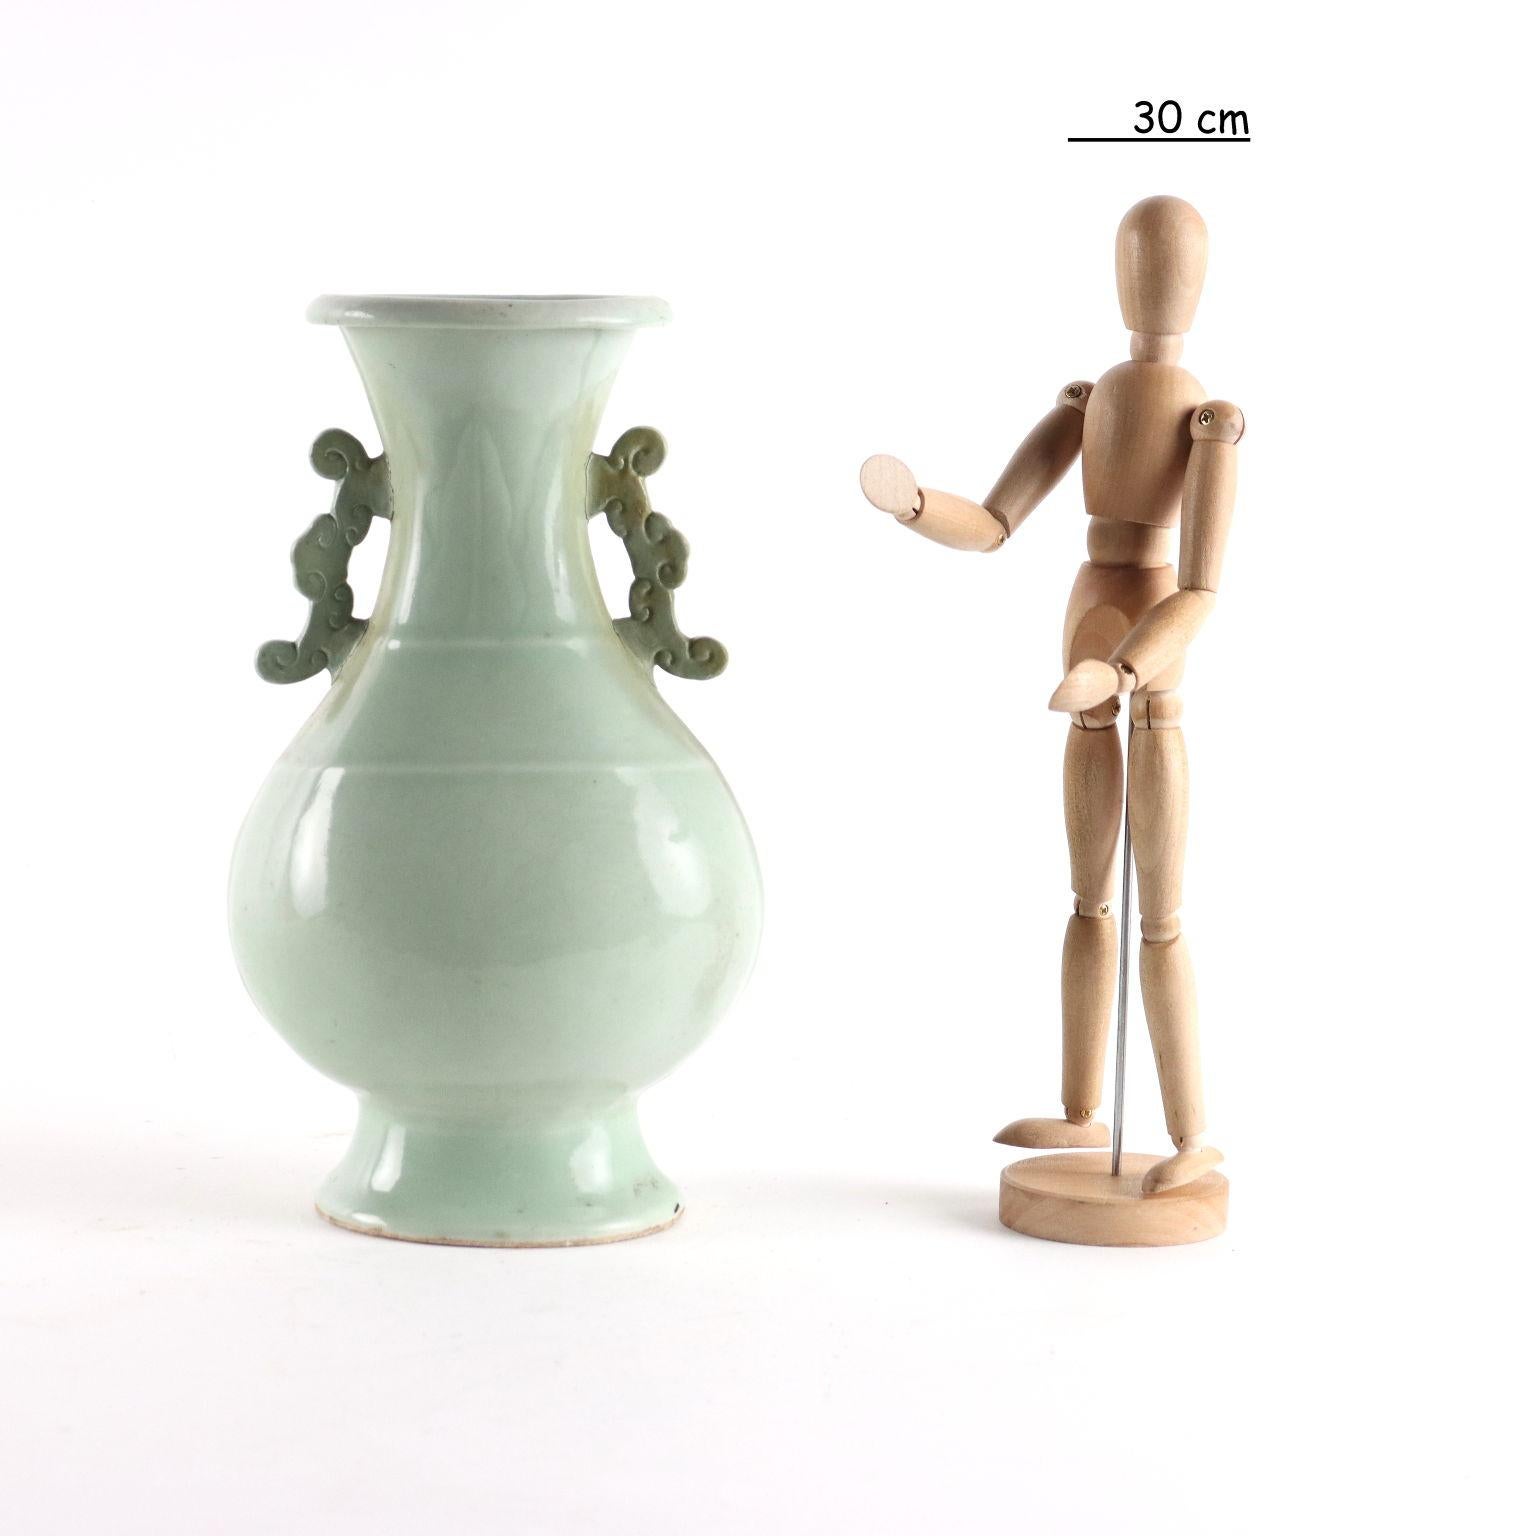 Longquan-Vase mit Balusterform und keladonfarbenem Fond, fein bandförmig graviert, im oberen Teil mit Platanenblattmotiven, seitliche Griffe in Form von stilisierten Wolken. Mittleres und unteres Band mit Pflanzentrauben.